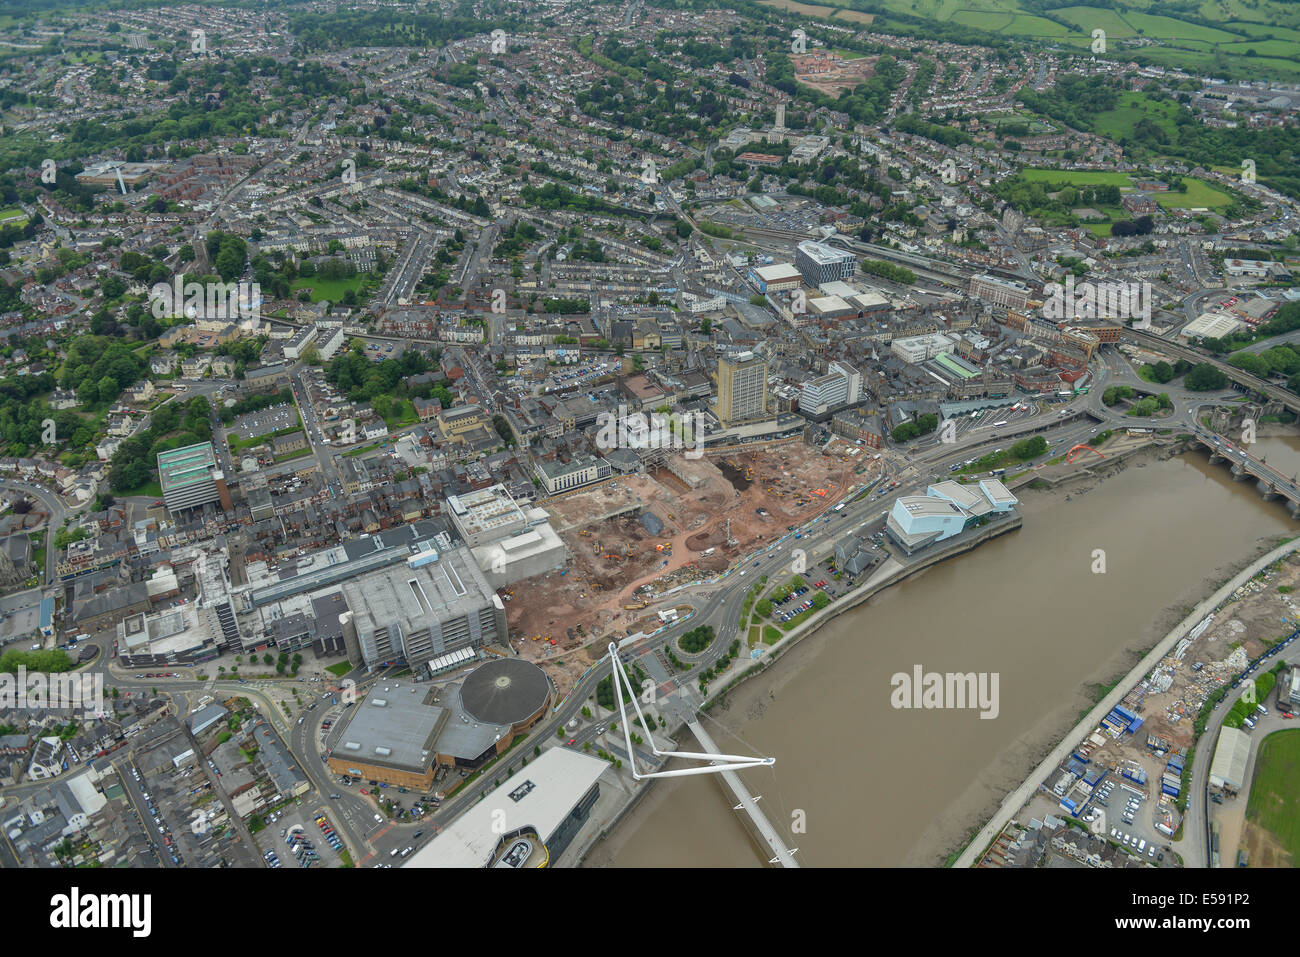 Une vue aérienne de Newport, Gwent, montrant le centre-ville et de la zone autour de la rivière Usk. Banque D'Images